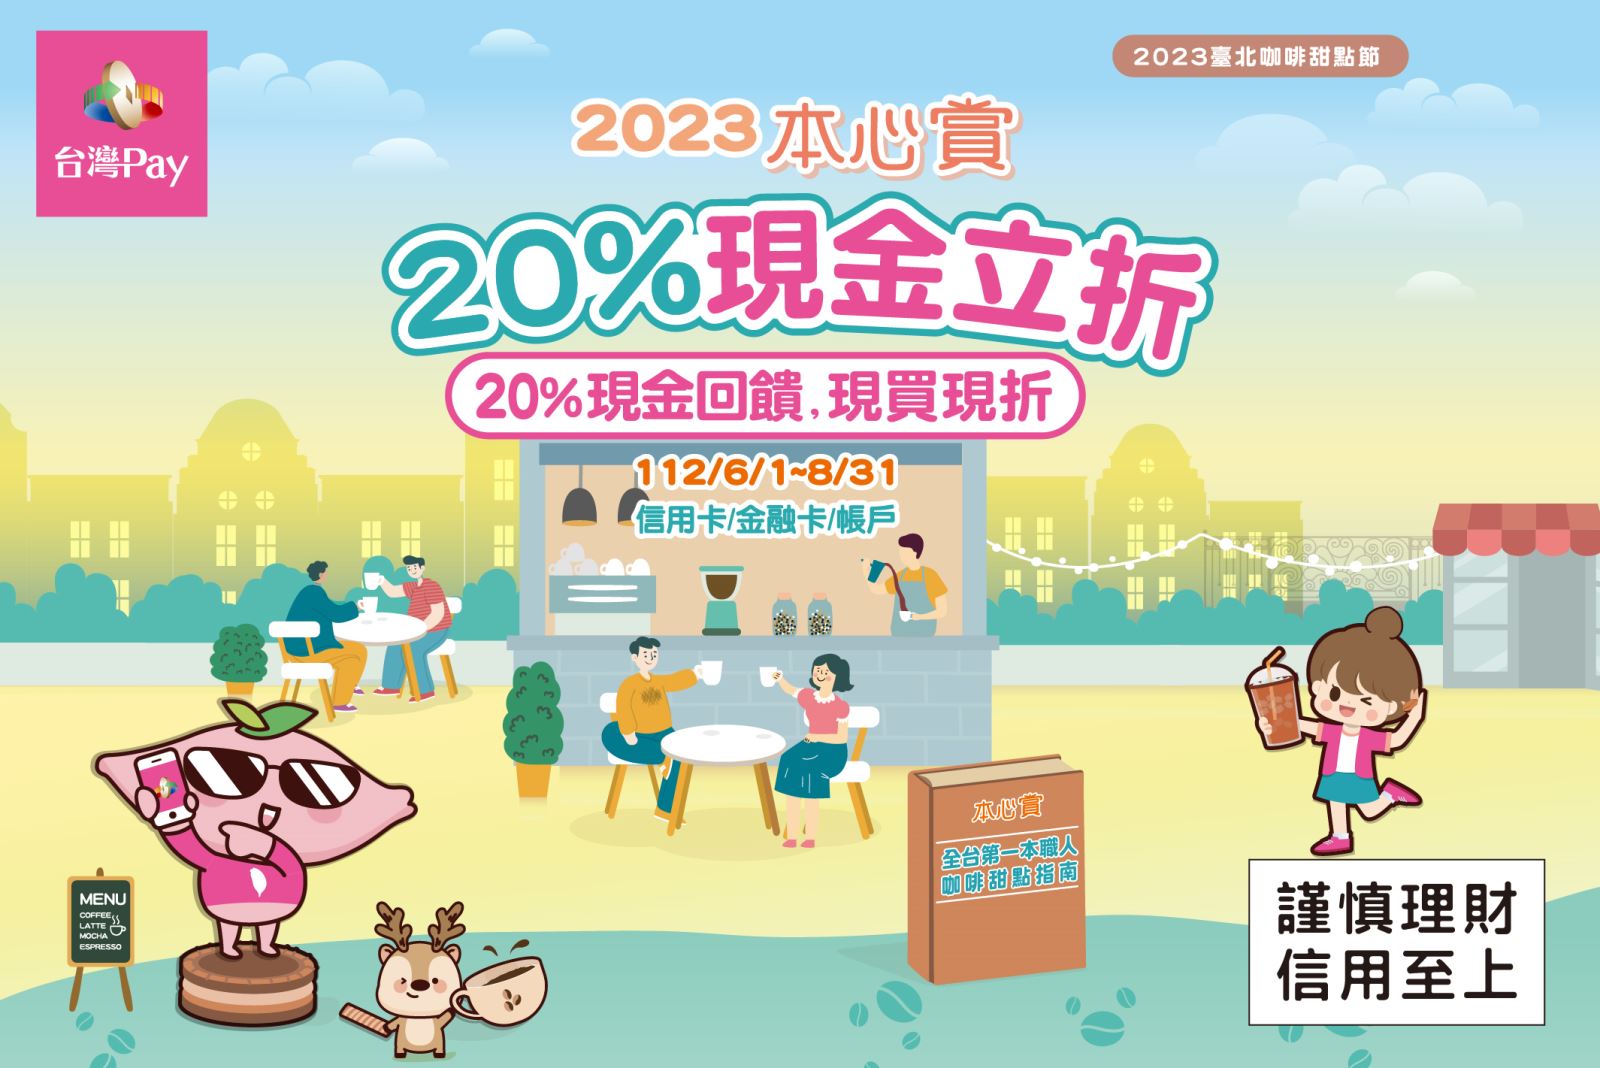 以「台灣Pay」QR Code 掃碼進行支付，單筆消費不限金額可享現折20%優惠